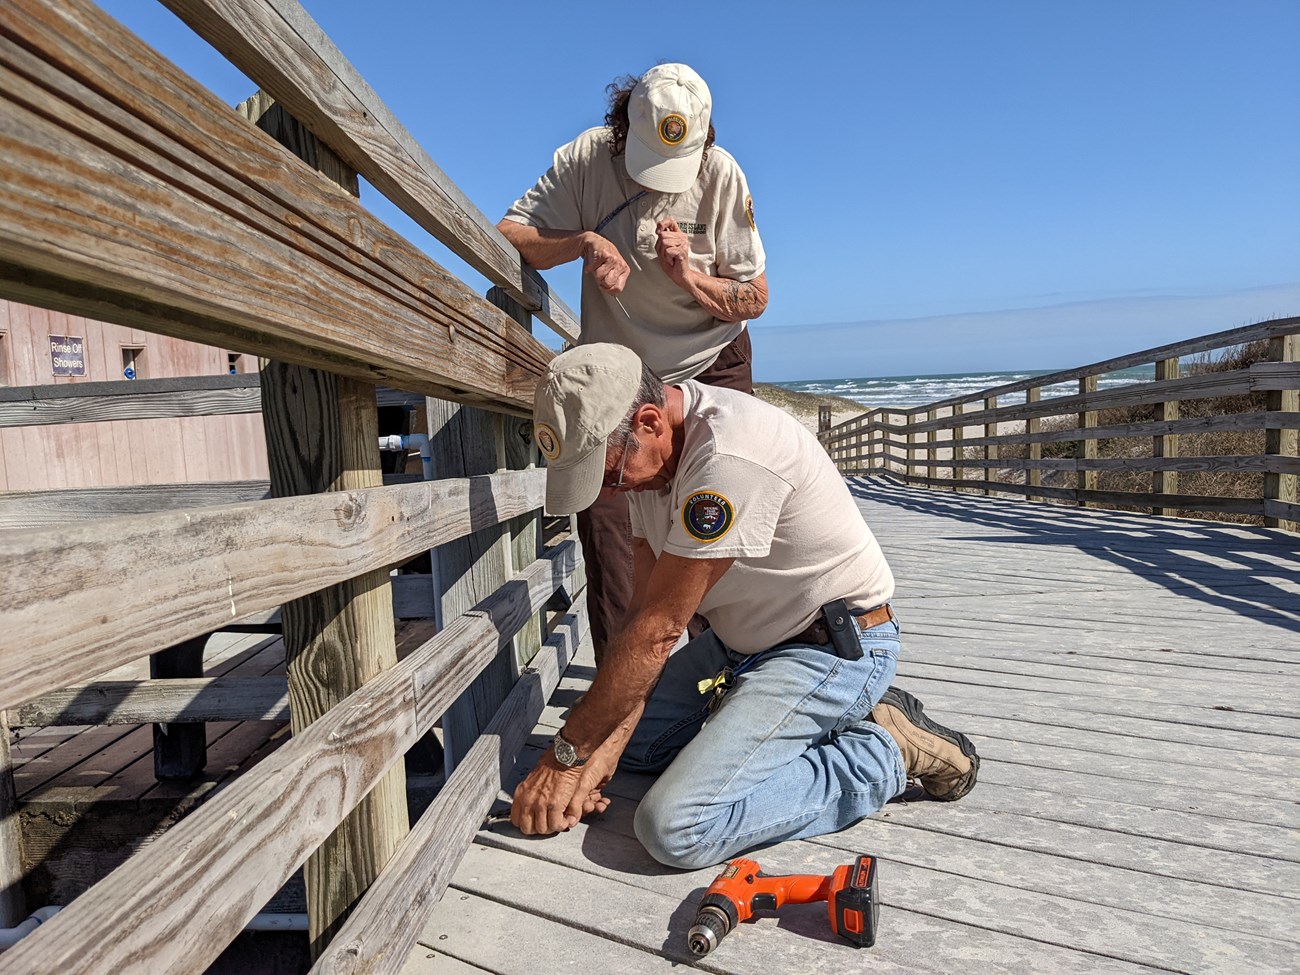 Two volunteers fix a broken board on a boardwalk.